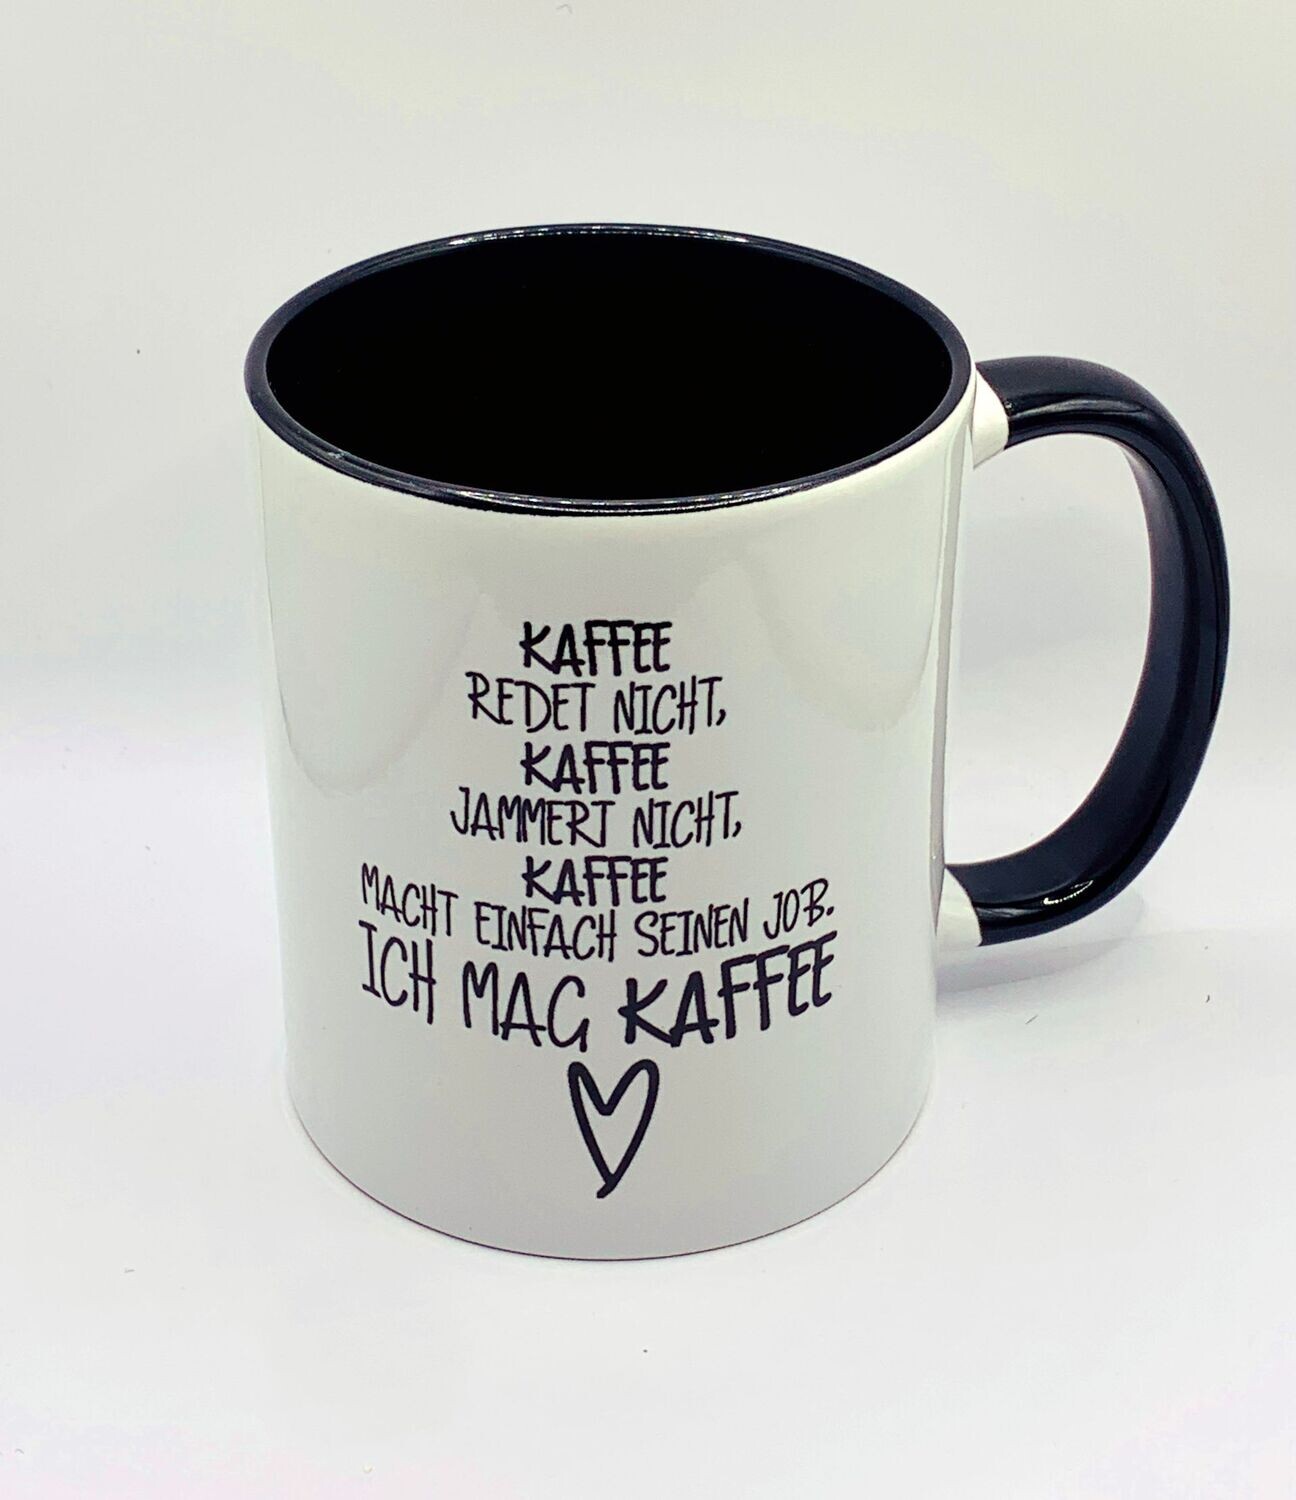 Tasse weiß aus Keramik 330 ml , schwarzer Griff/Inhalt, "Kaffee redet nicht..."